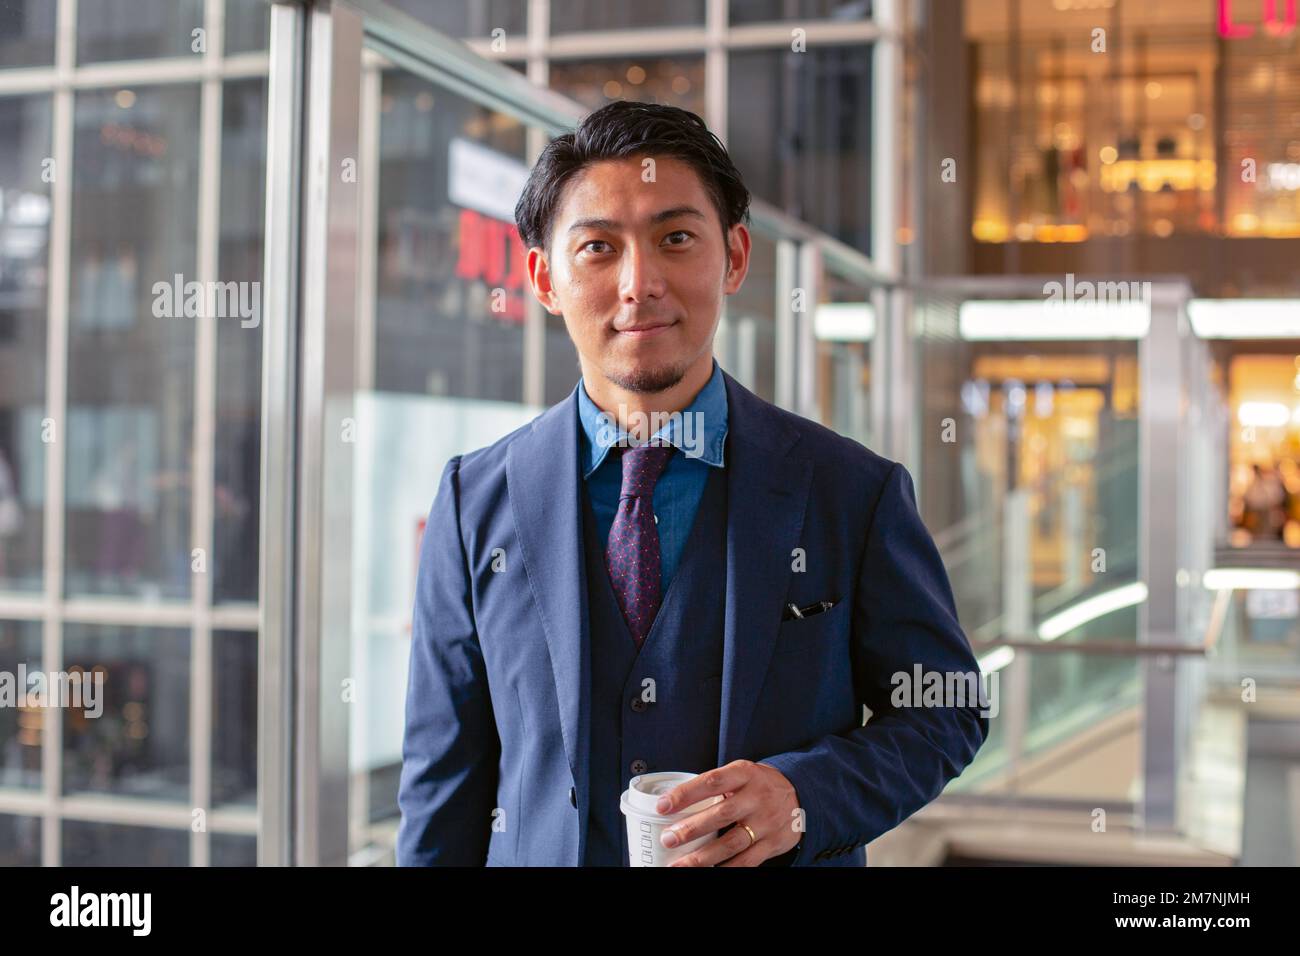 Ein junger Geschäftsmann im blauen Anzug, der in der Innenstadt unterwegs ist und eine Tasse Kaffee mit sich führt. Stockfoto